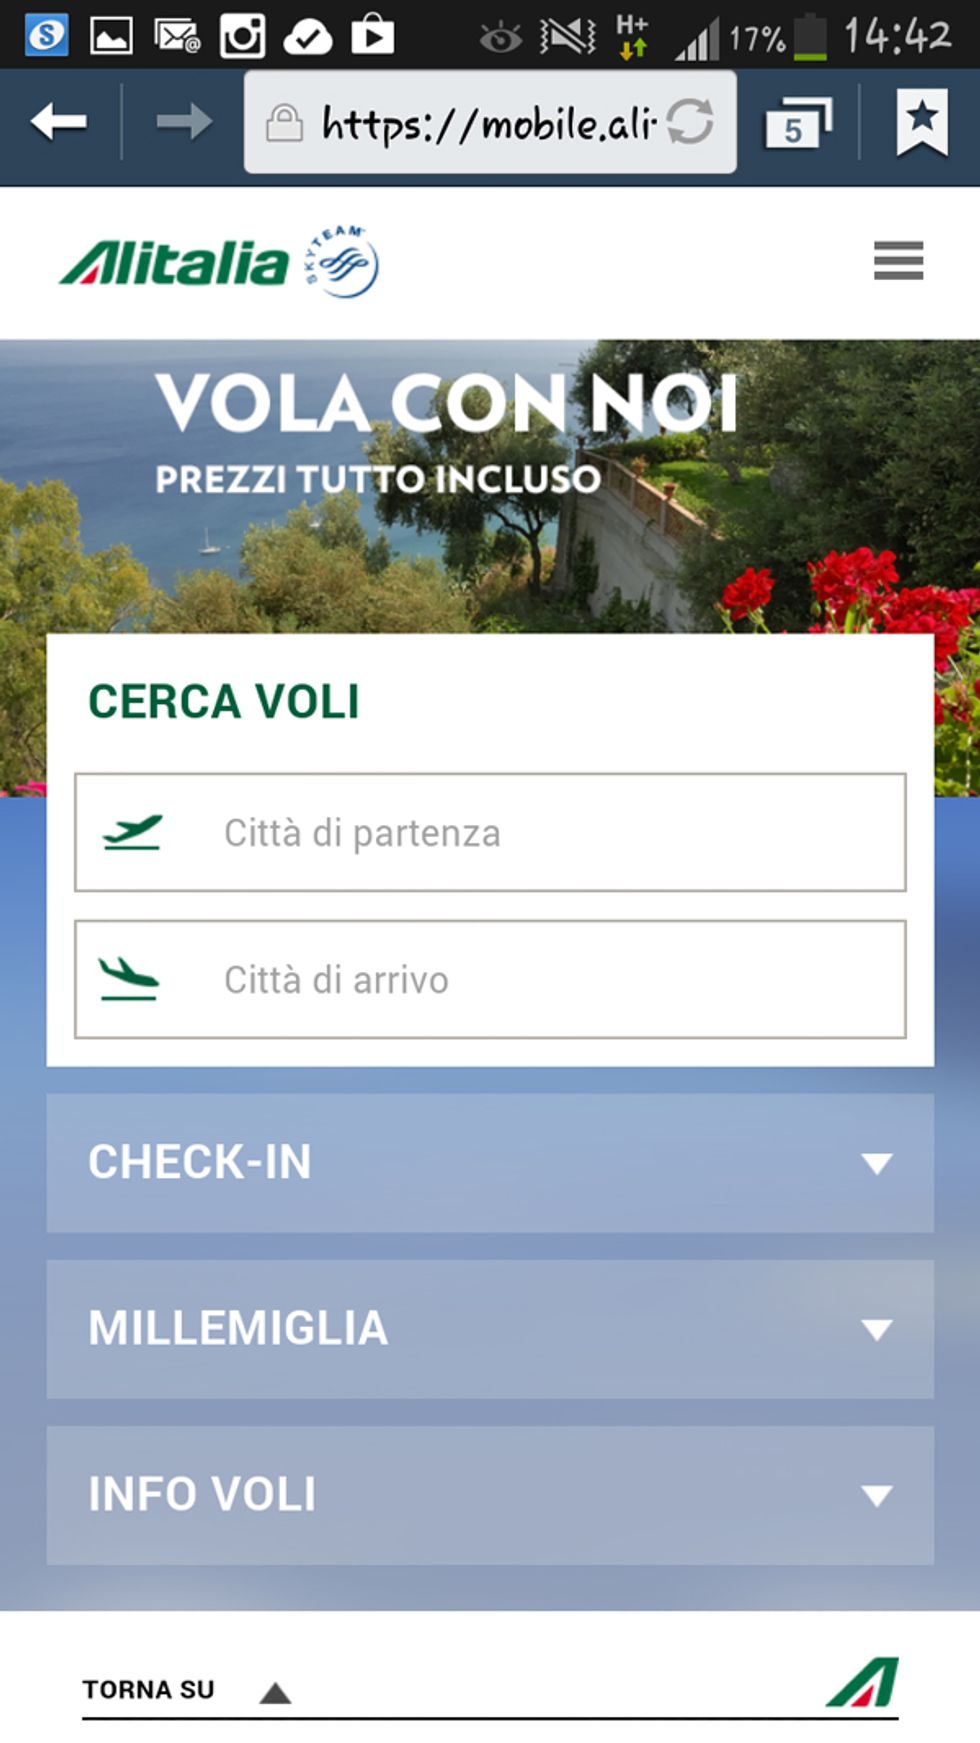 Alitalia rinnova il sito mobile